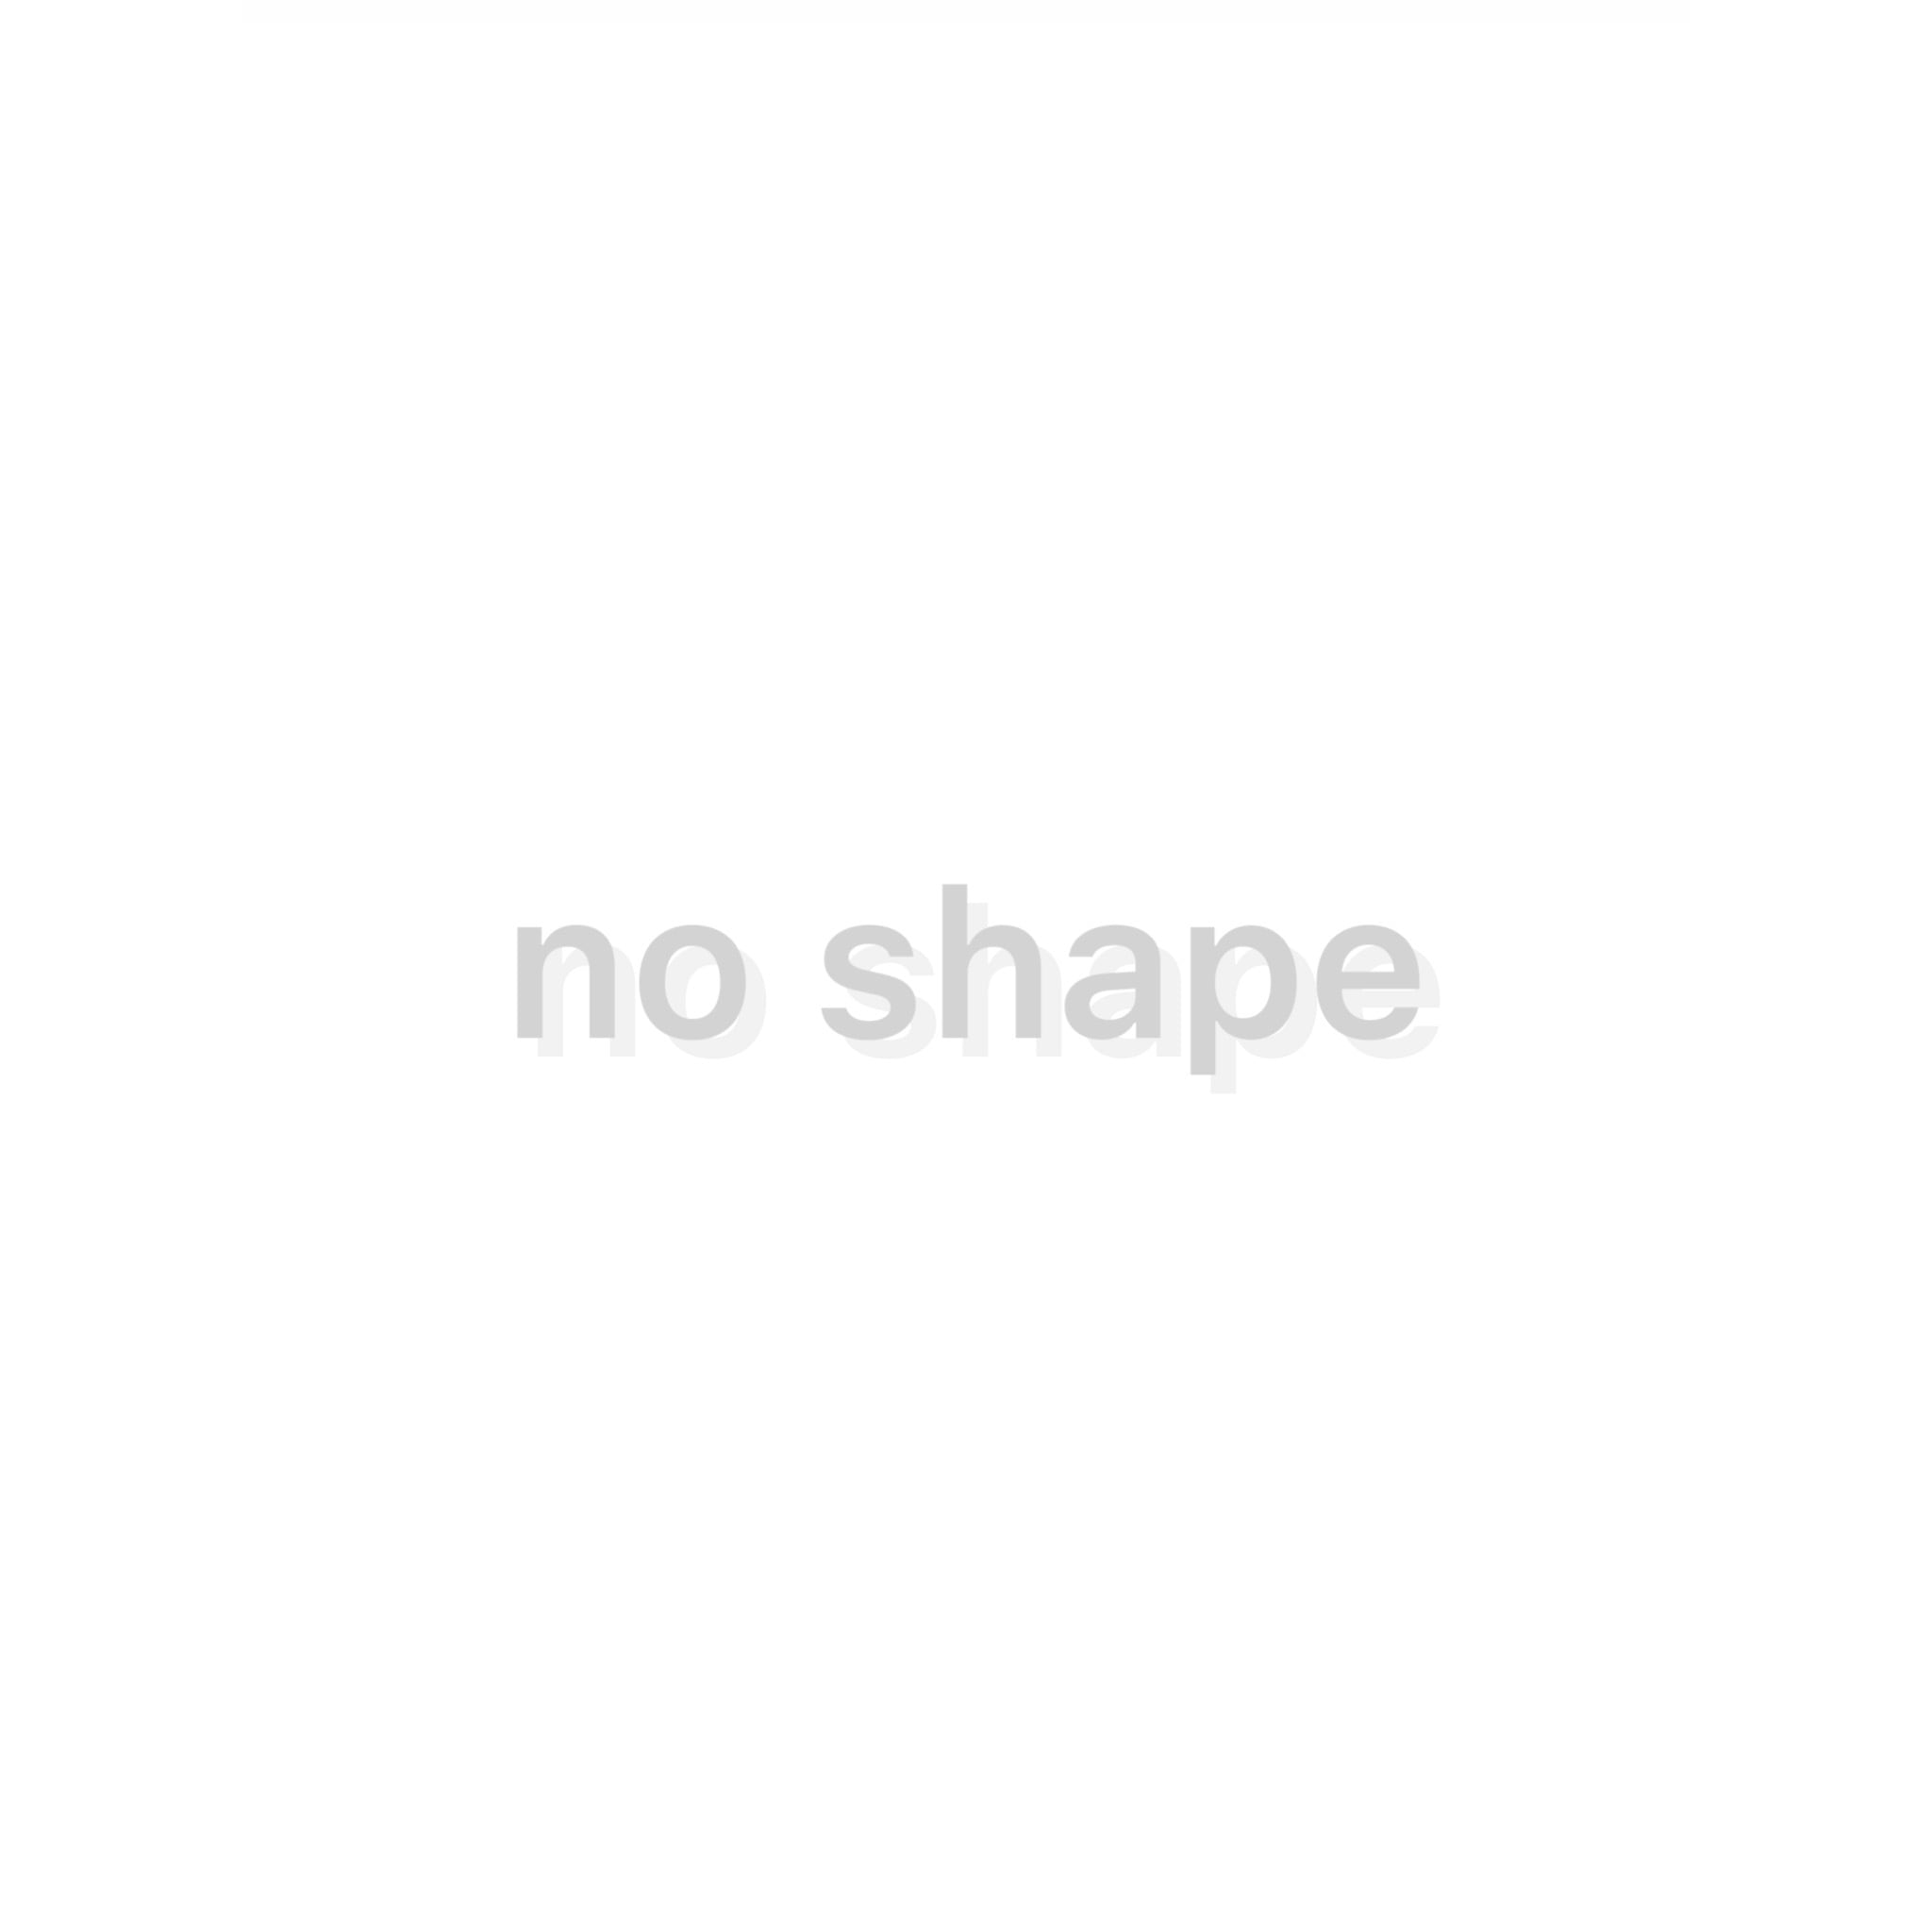 no shape